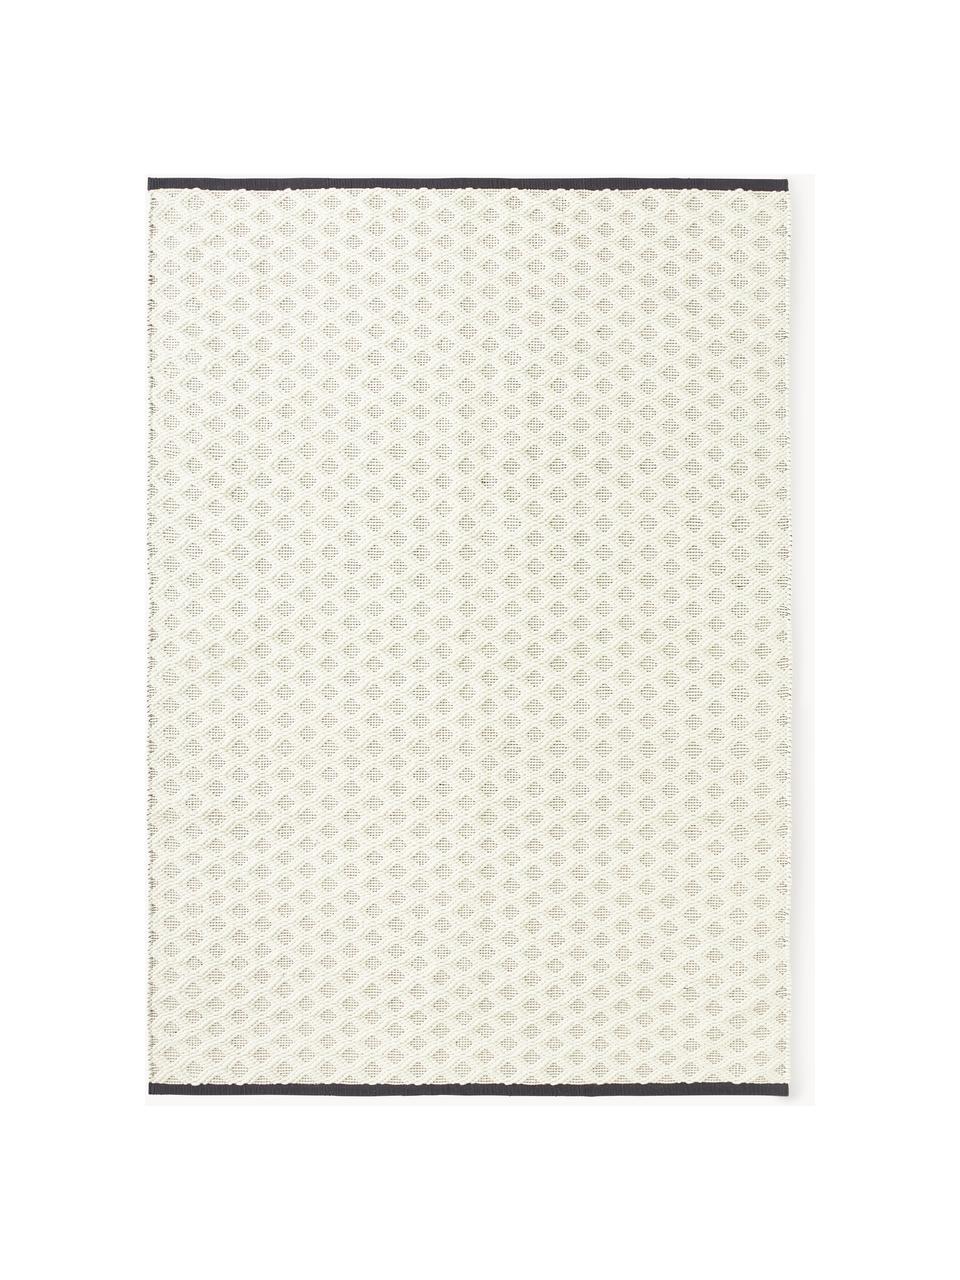 Ručně tkaný vlněný koberec Inar, 67 % vlna (certifikace RWS), 33 % bavlna

V prvních týdnech používání vlněných koberců se může objevit charakteristický jev uvolňování vláken, který po několika týdnech používání., Tlumeně bílá, černá, Š 80 cm, D 150 cm (velikost XS)